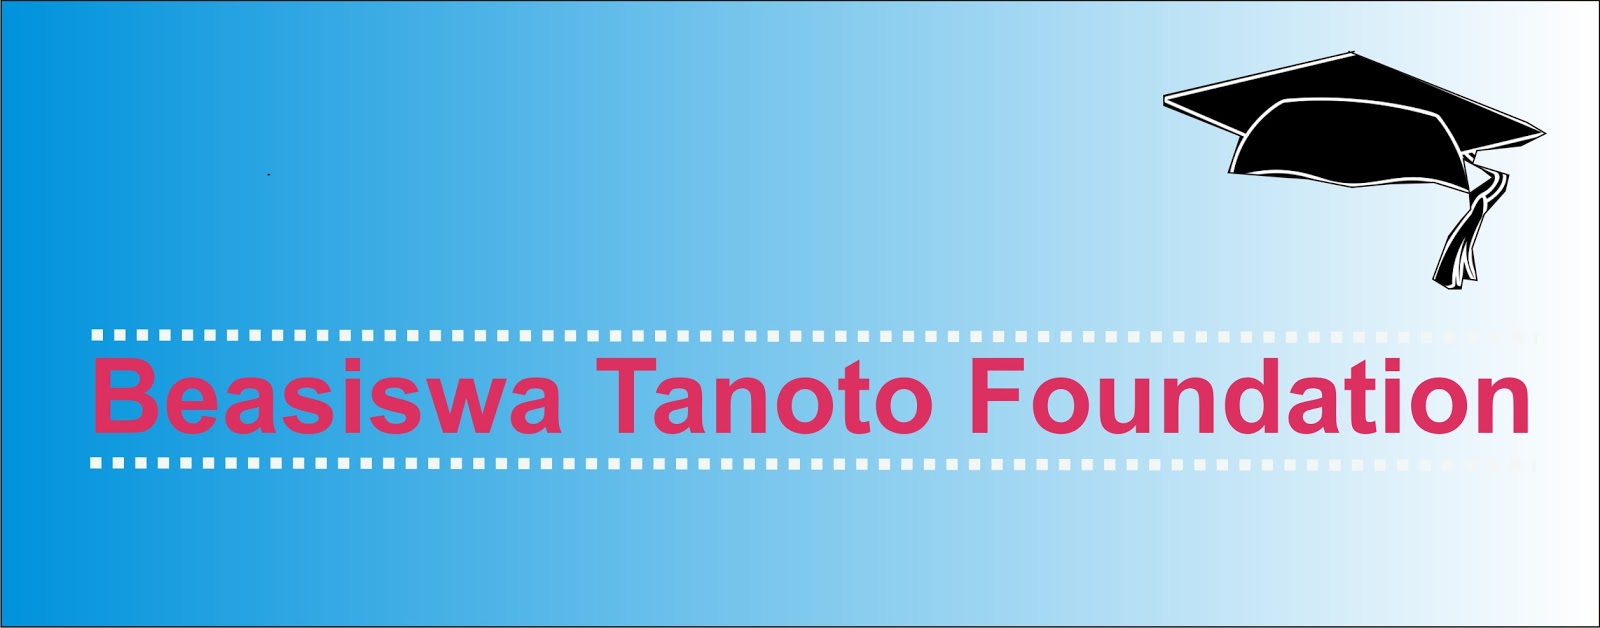 Beasiswa Tanoto Foundation Untuk Mahasiswa S1 Dan S2 - Pendaftaran Mahasiswa